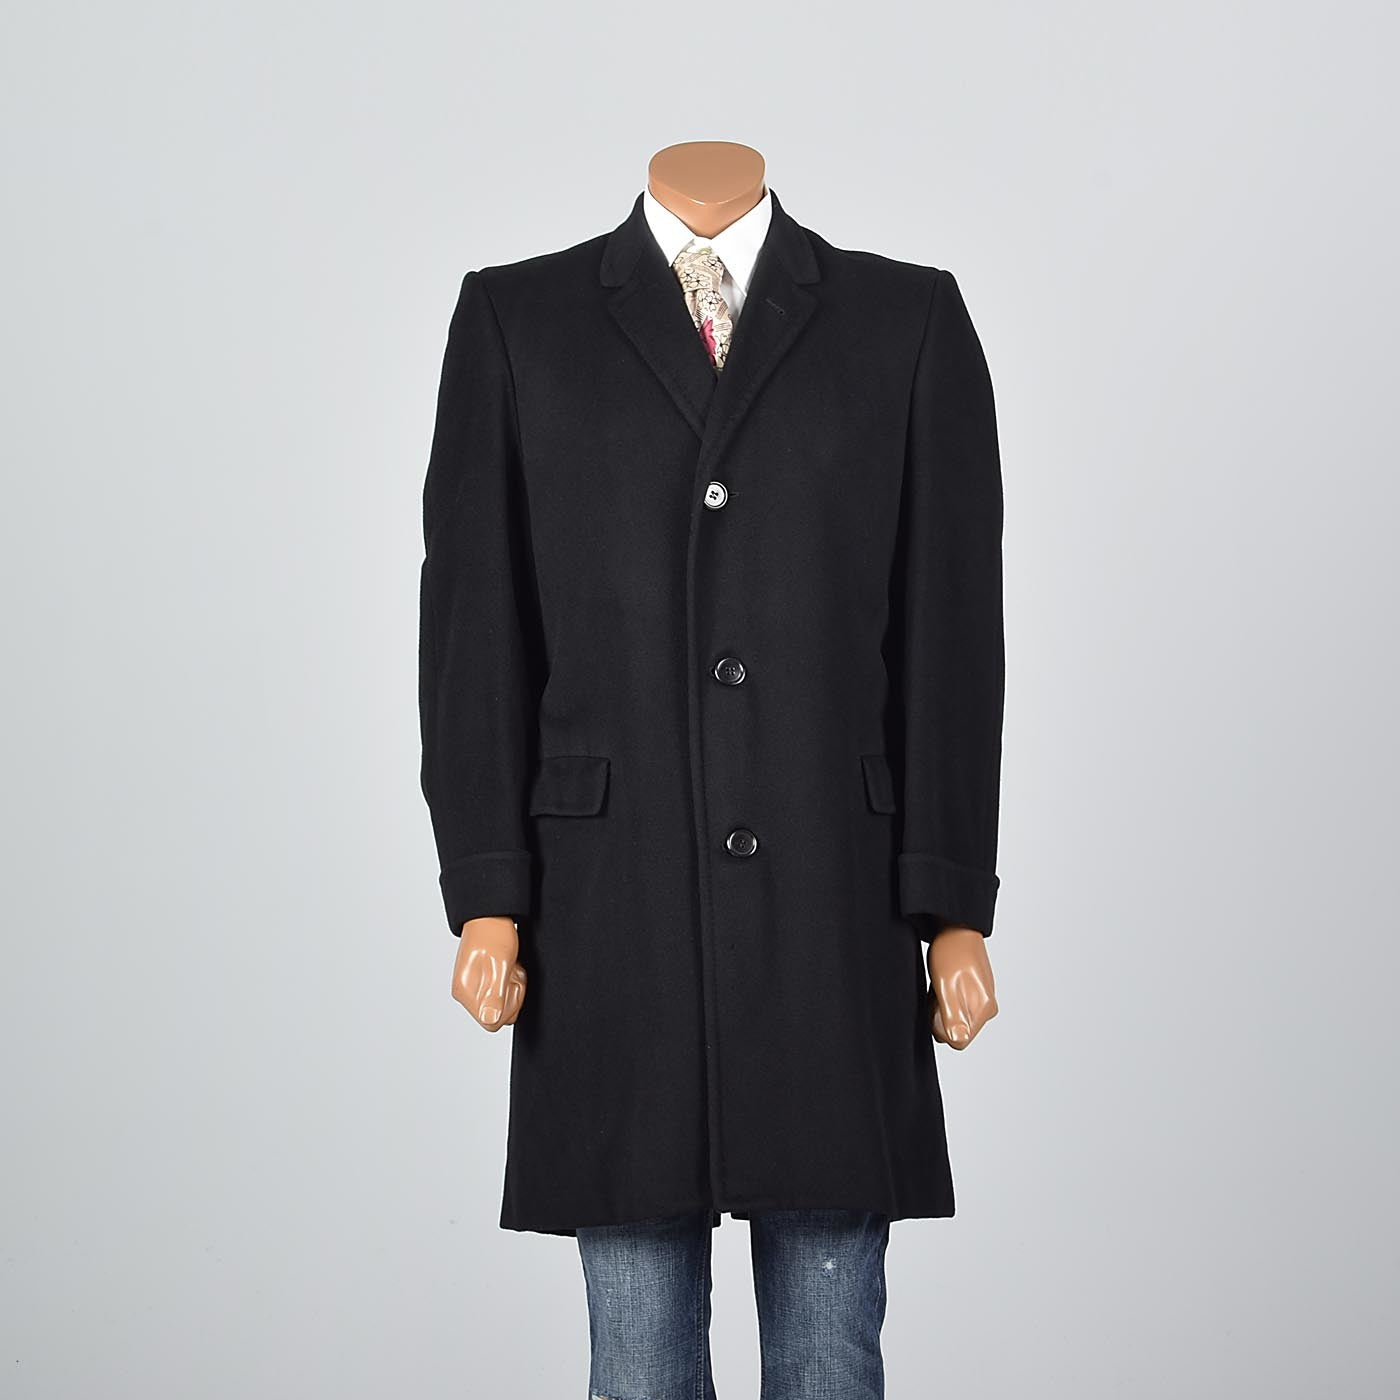 1950s Men's Black Cashmere Coat by Kuppenheimer